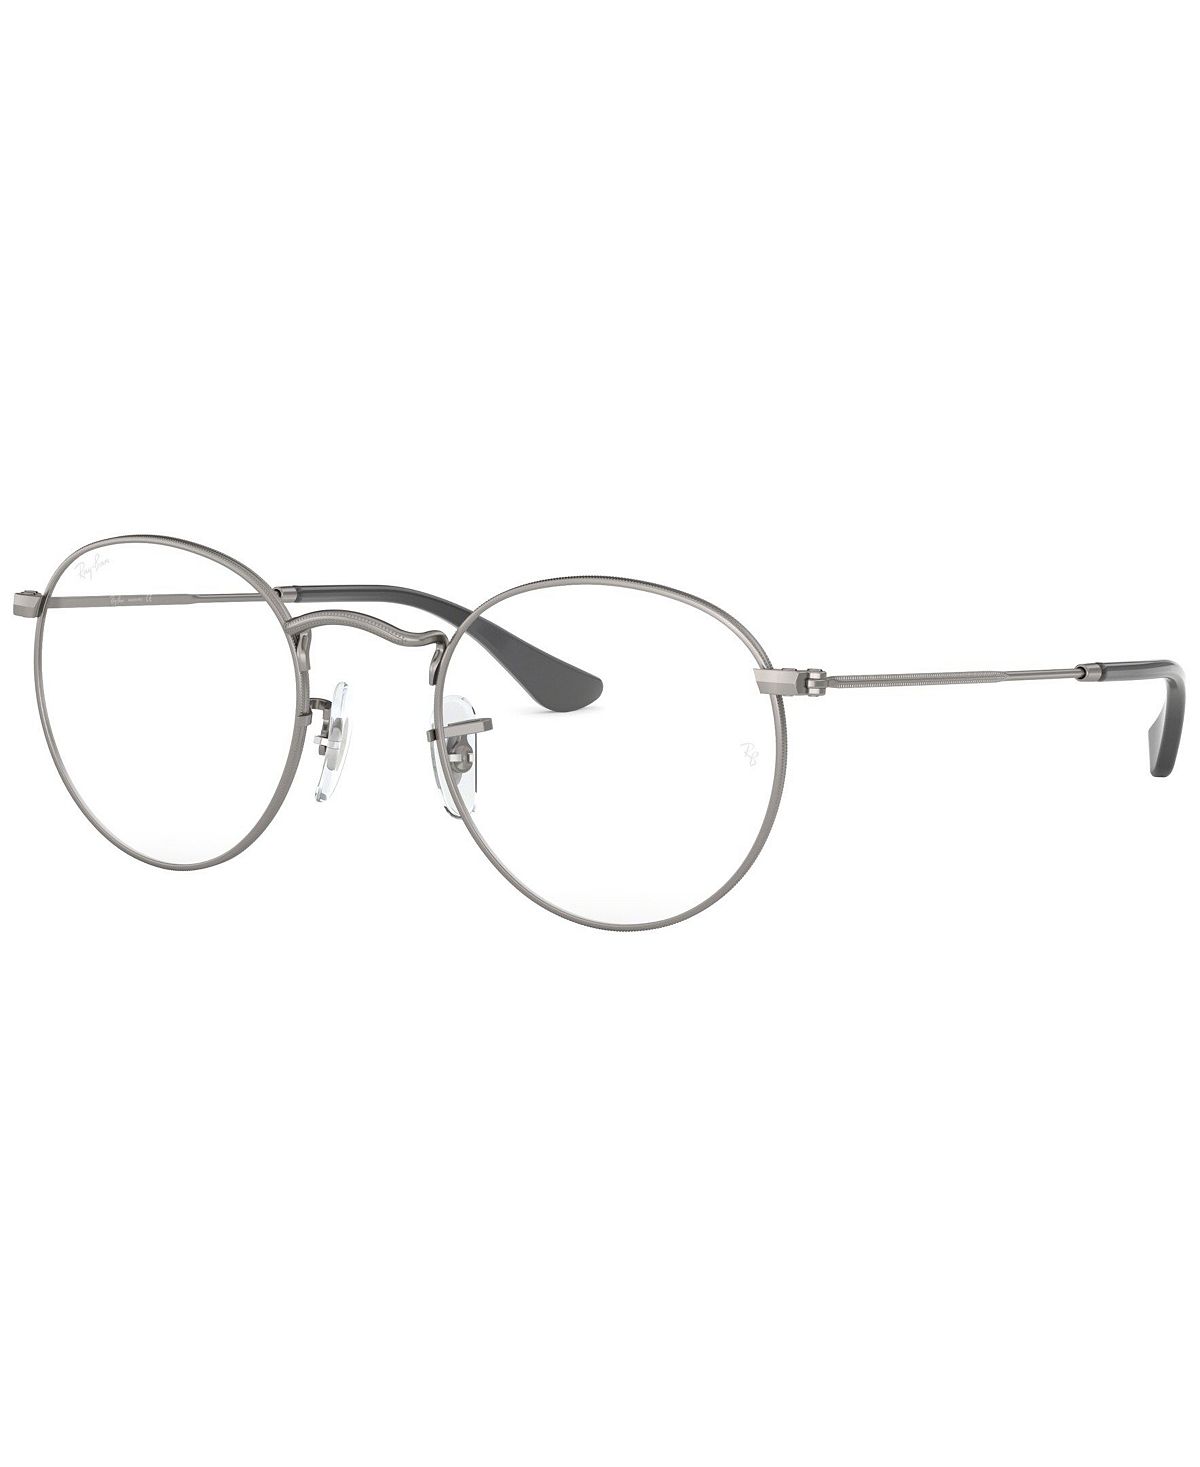 RB3447V Круглые металлические очки унисекс, круглые очки Ray-Ban